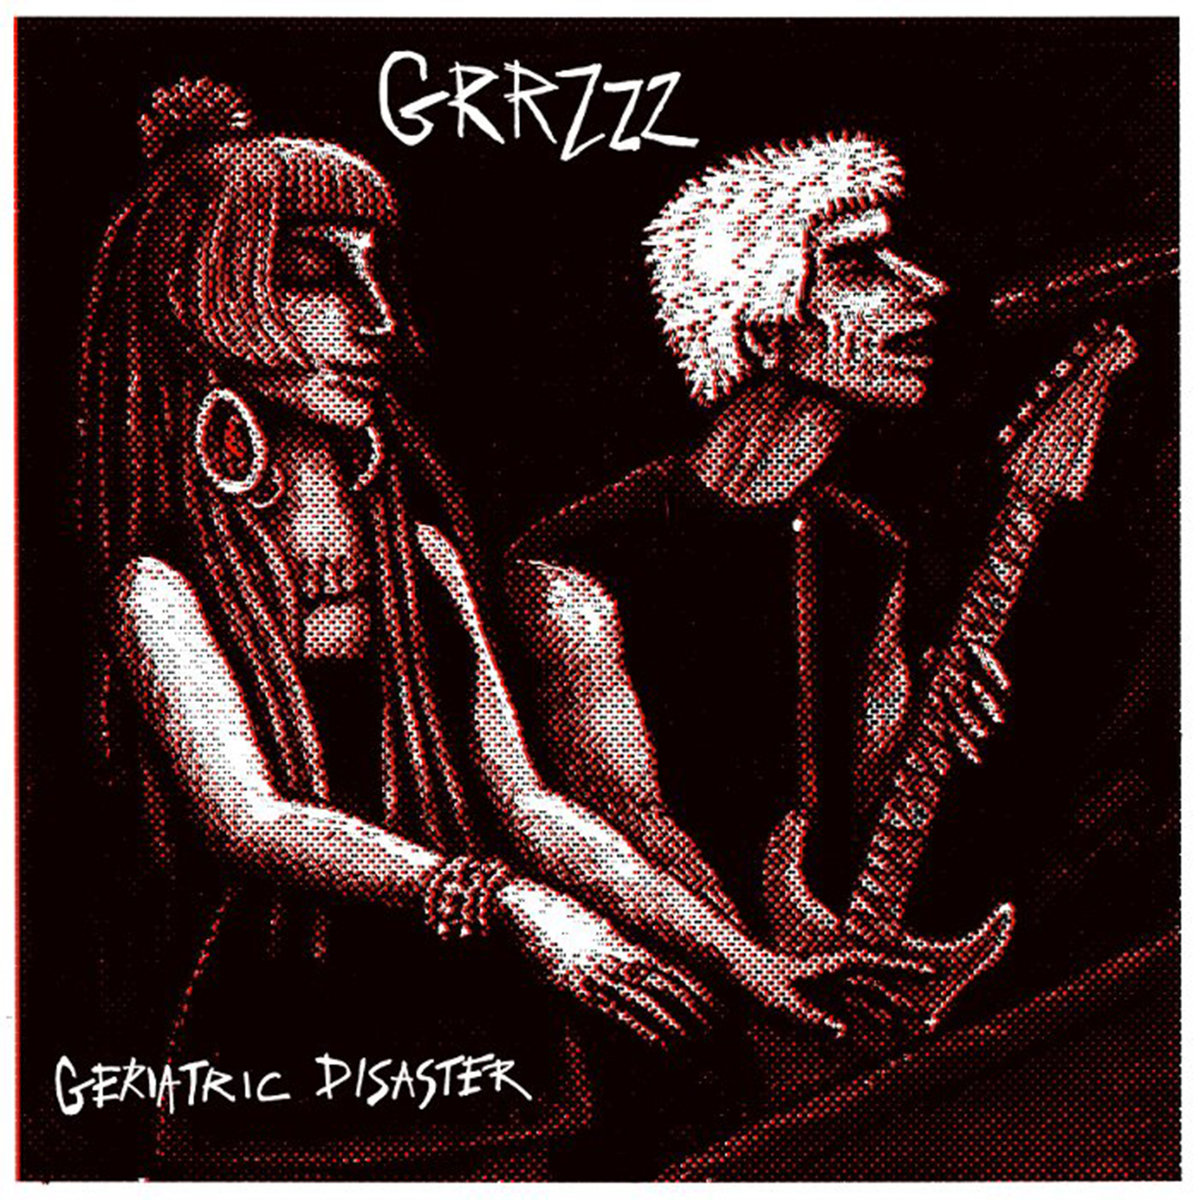 GRRZZZ "Geriatric disaster" - LP